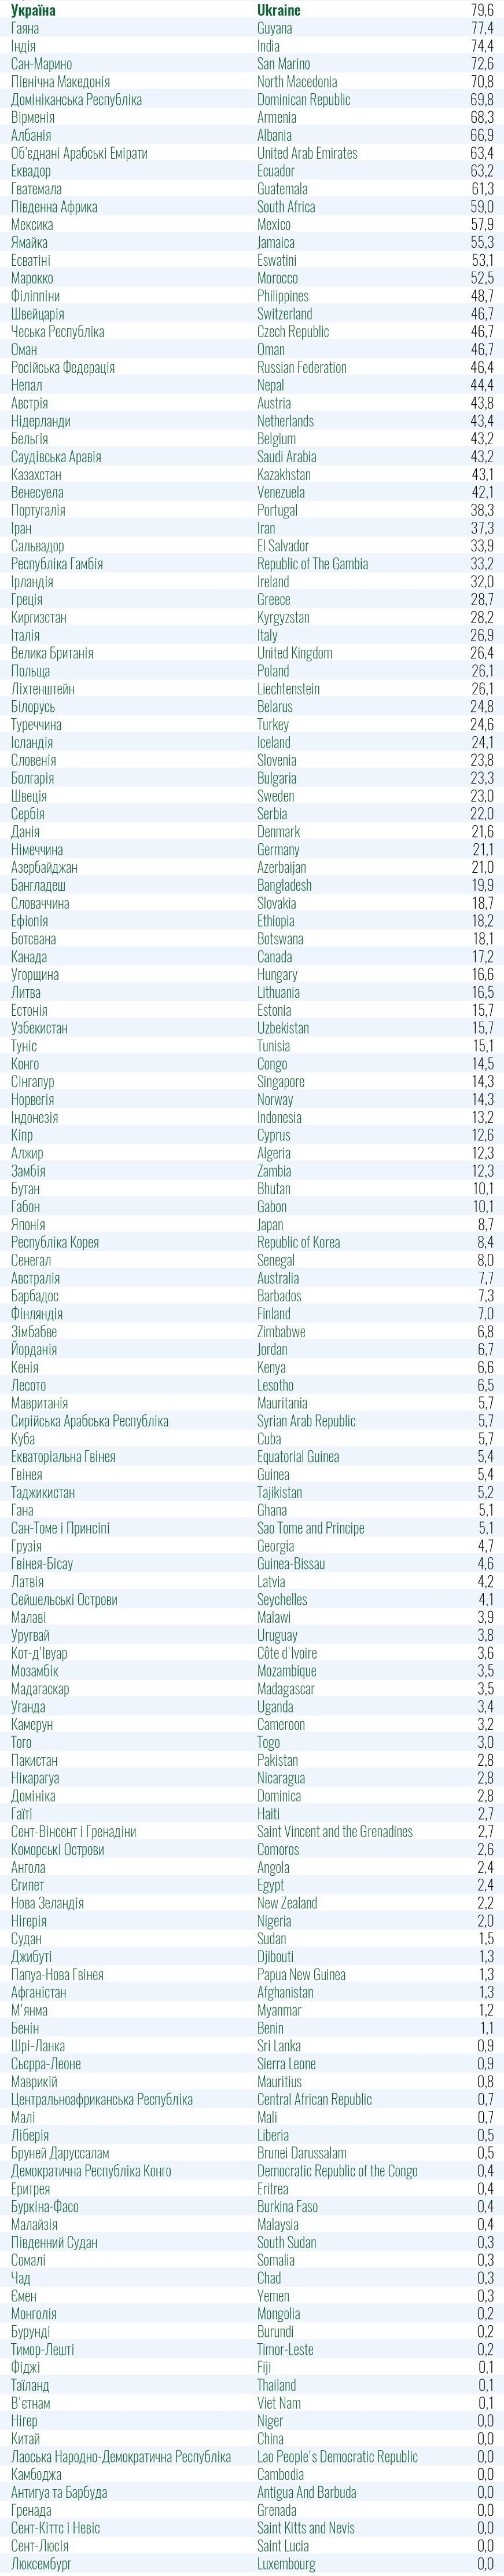 Минздрав включил все страны-соседи, кроме Румынии и Молдовы, в "зеленую зону" по Covid-19. Скриншот: Минздрав